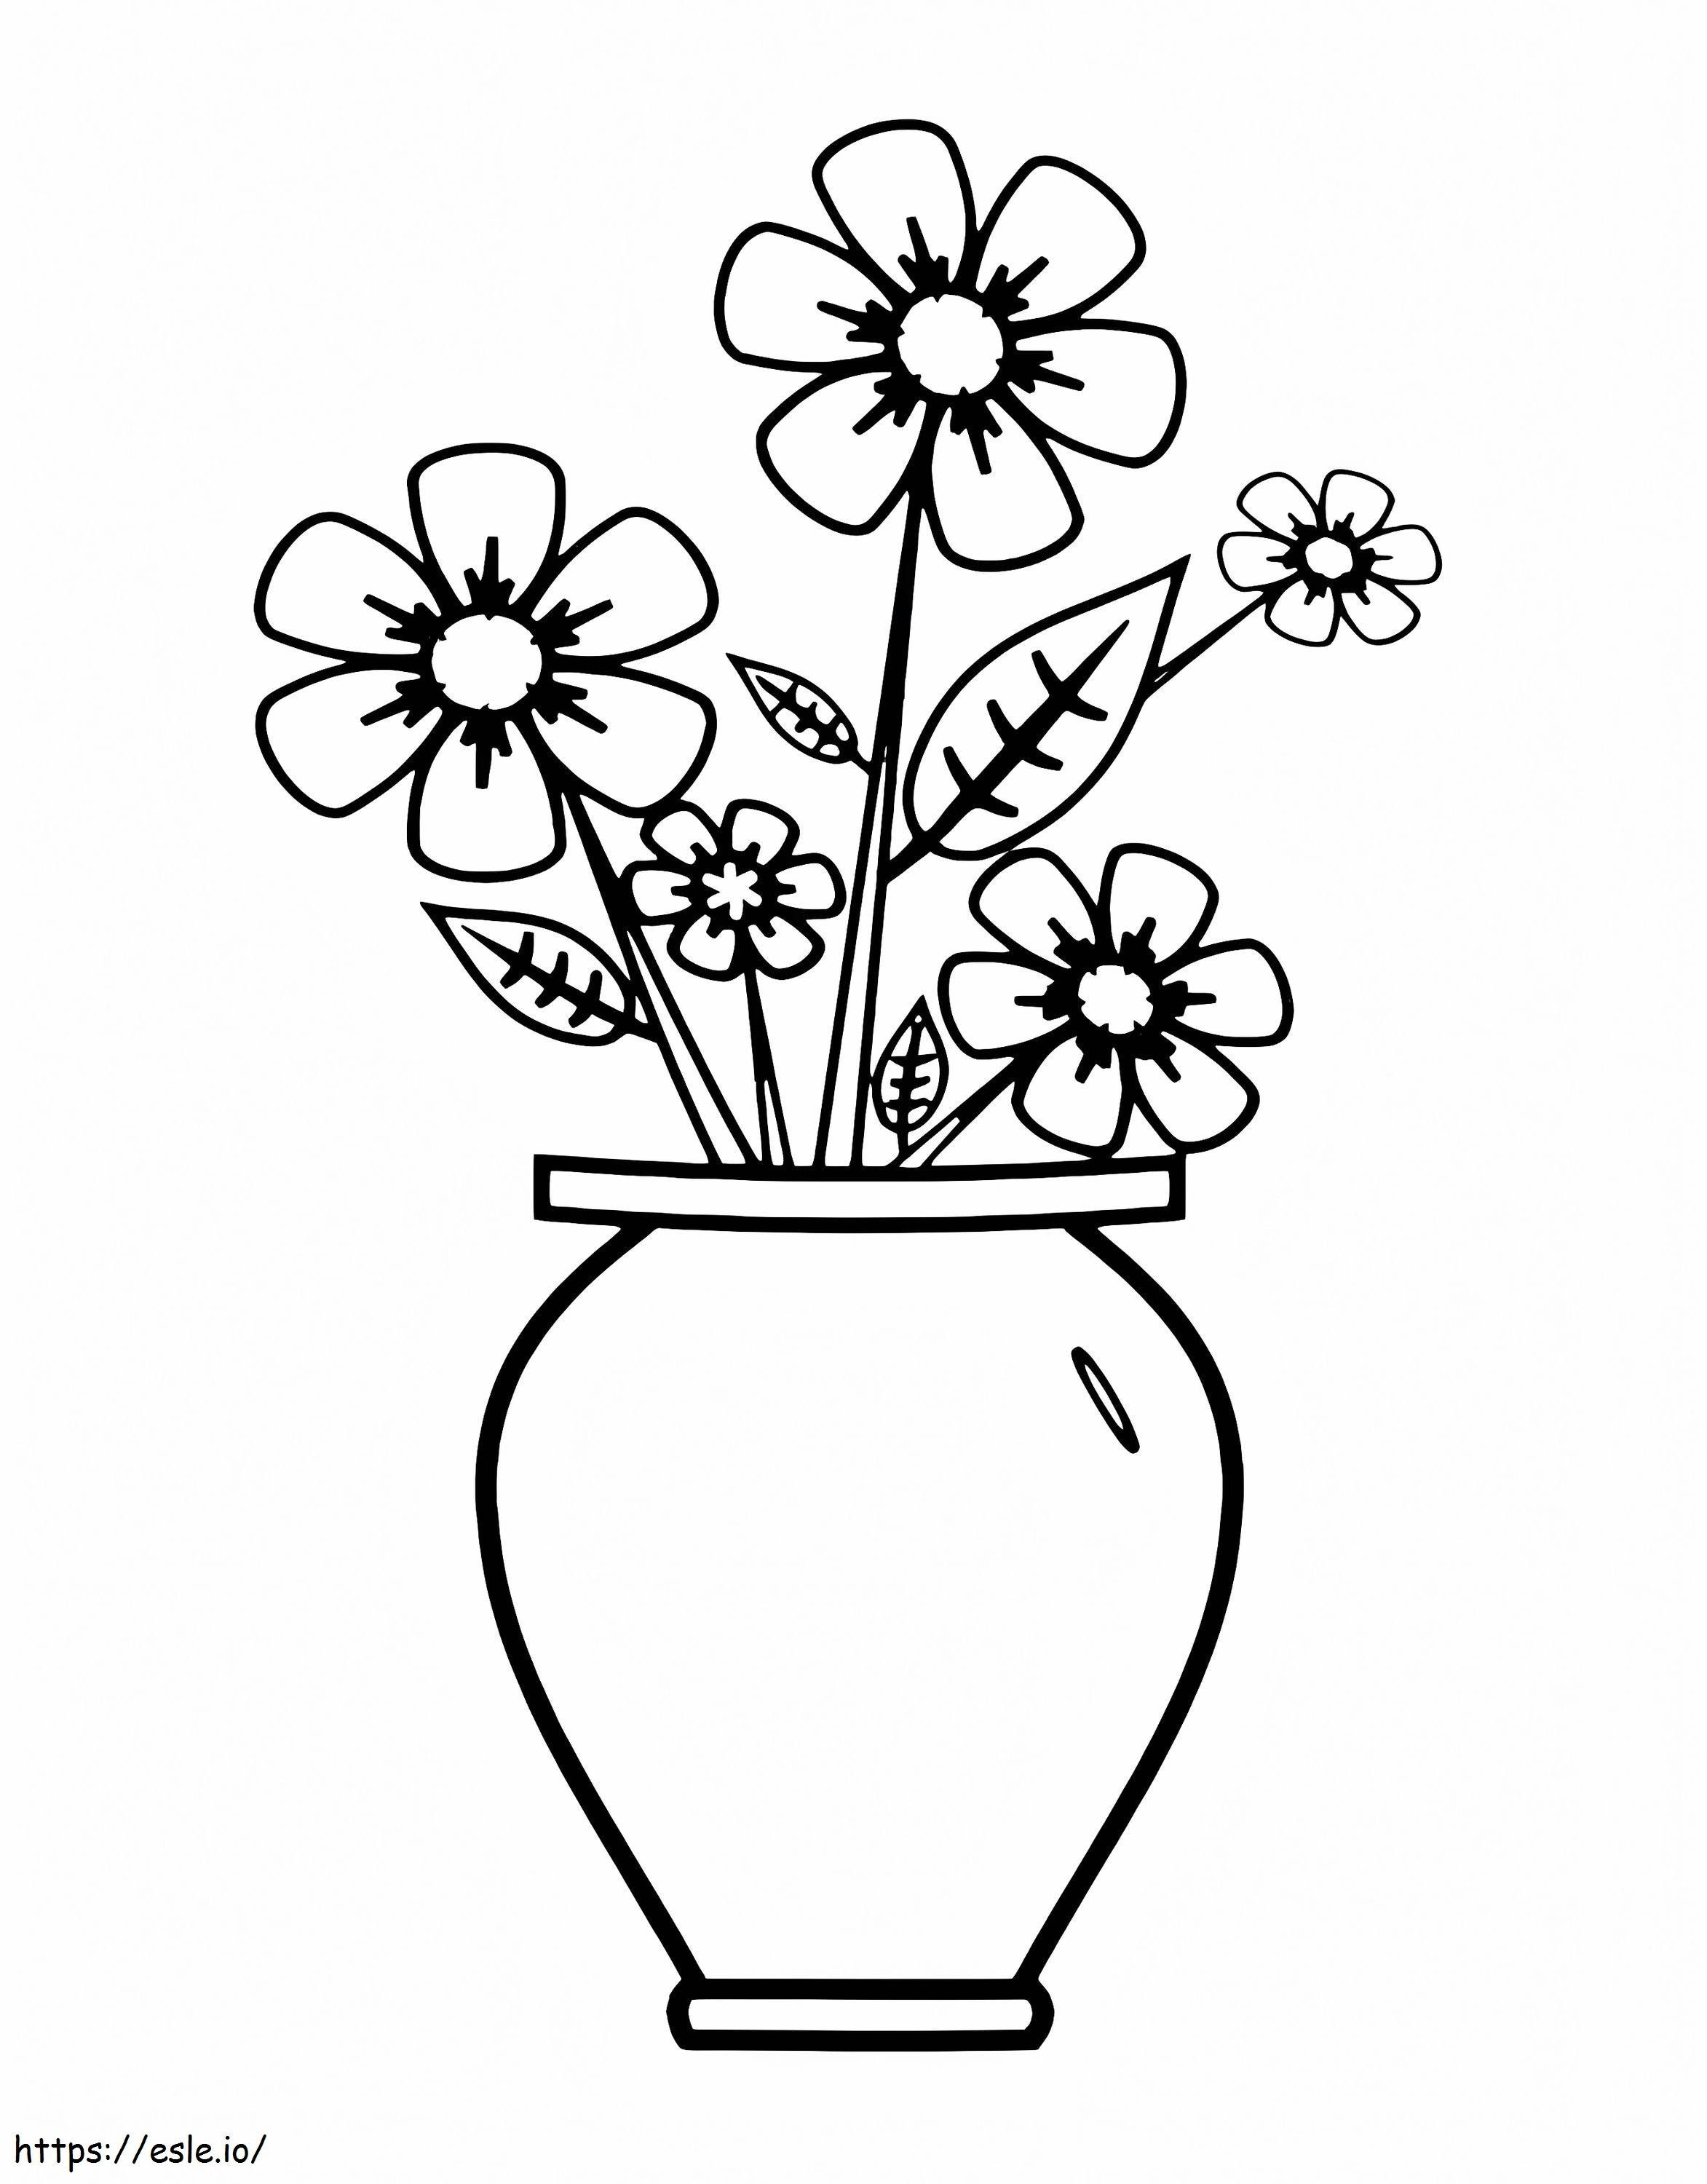 Coloriage Vase à fleurs 9 à imprimer dessin